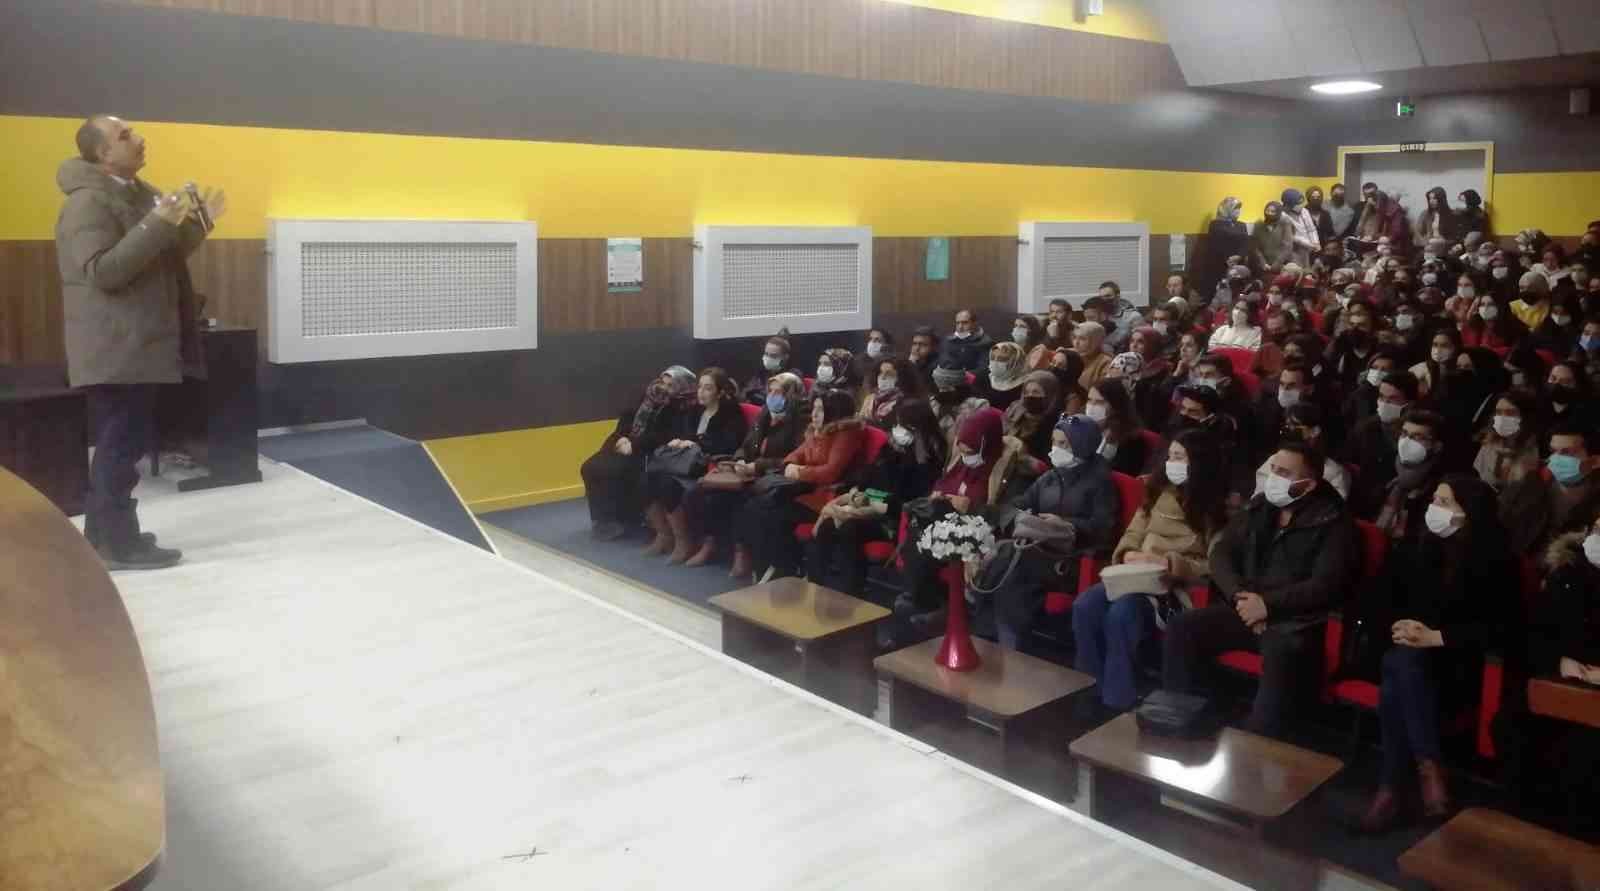 Ağrı’da öğretmenlere yönelik seminerler düzenleniyor #agri